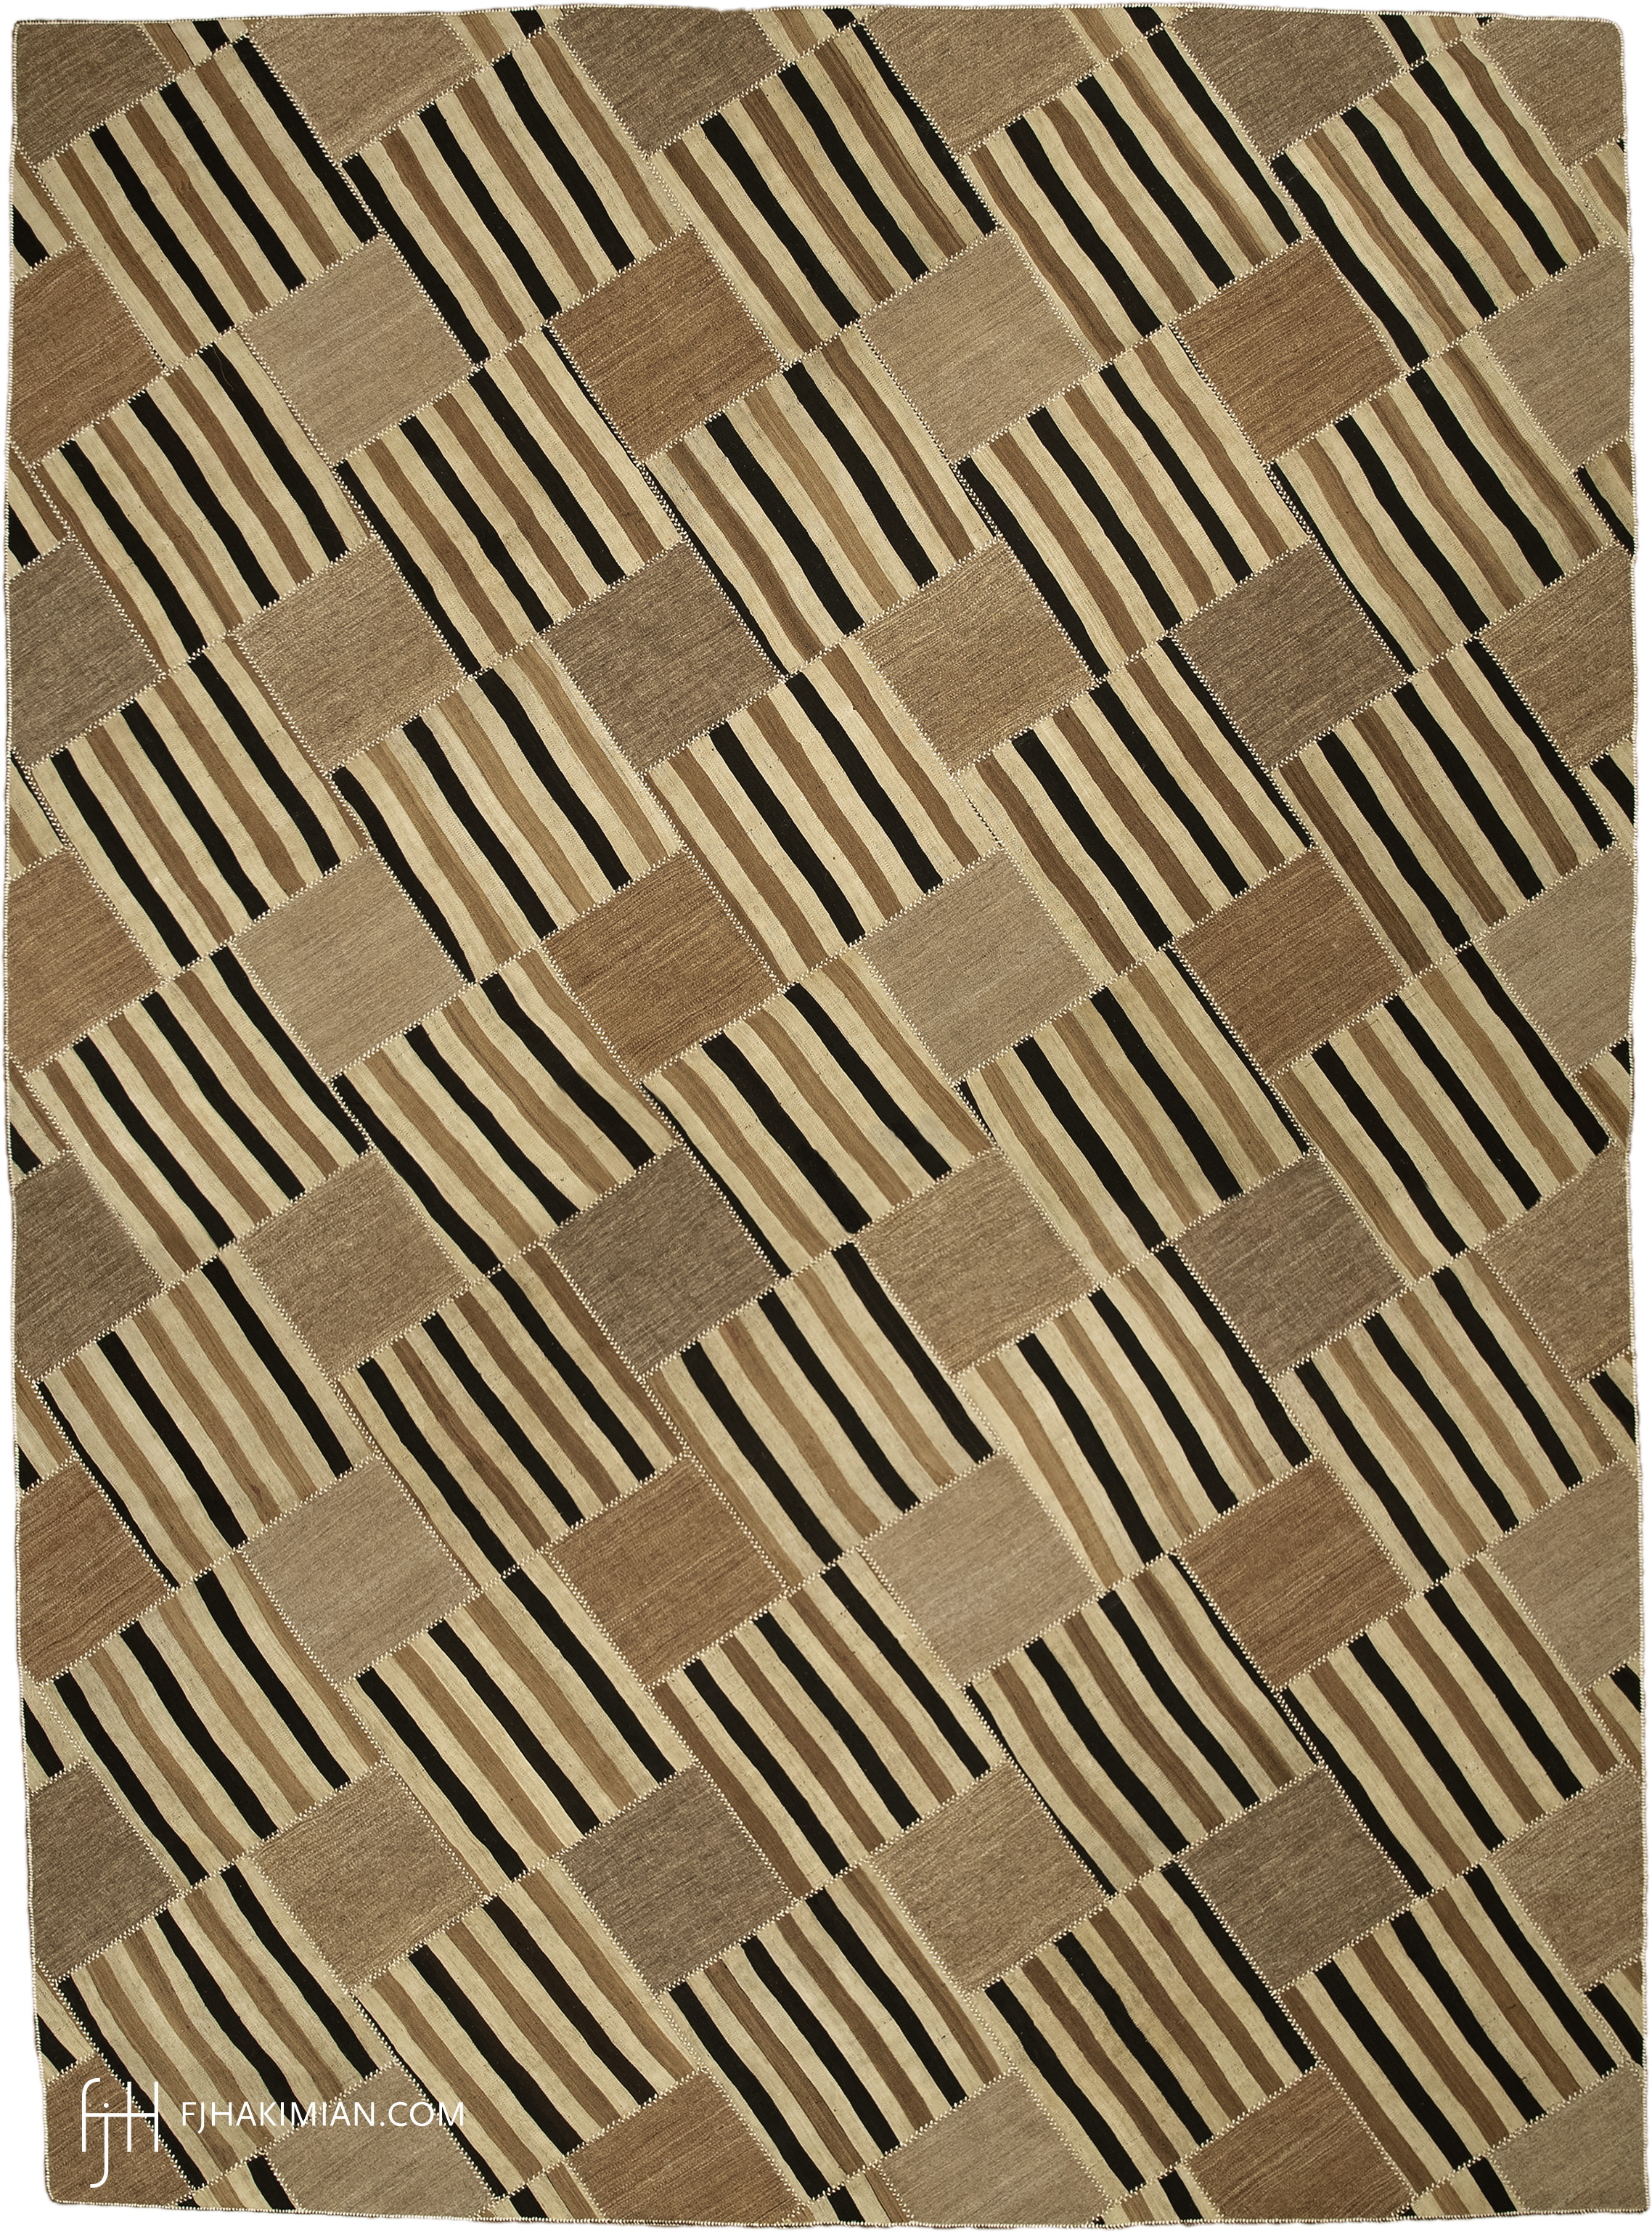 FJ Hakimian | 23216 | Vintage Carpet